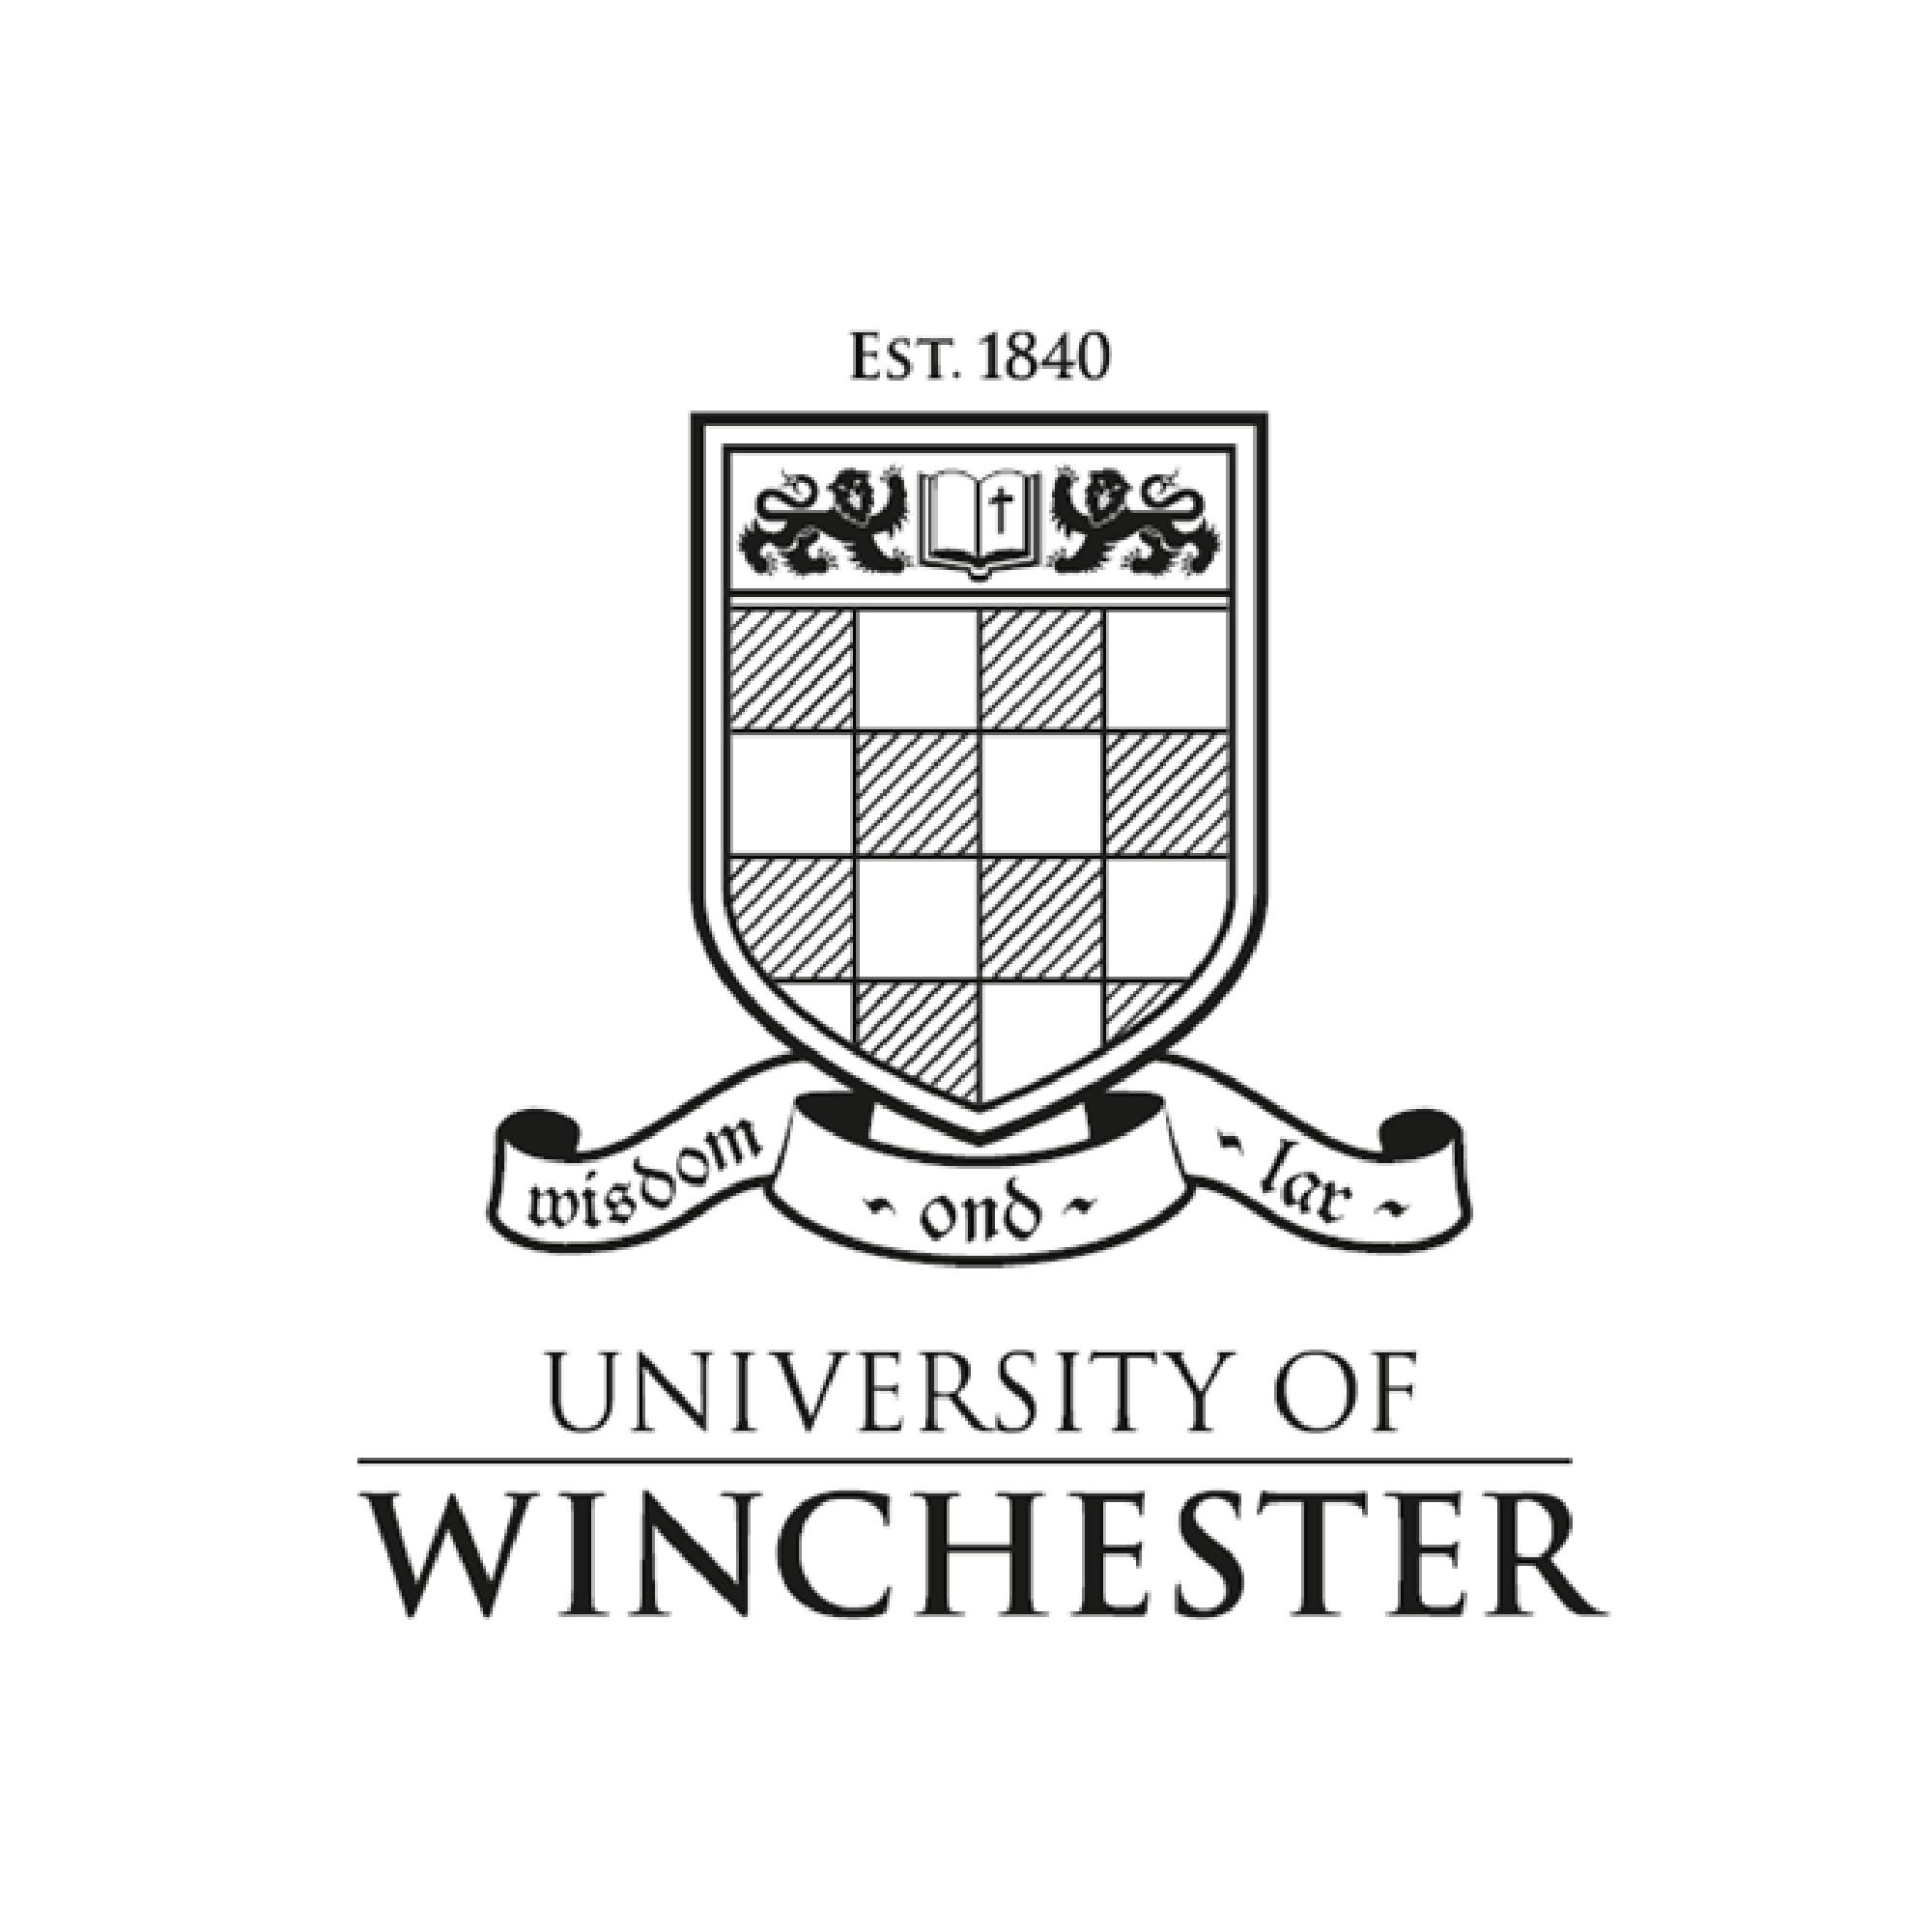 University of Winchester (Copy) (Copy) (Copy)